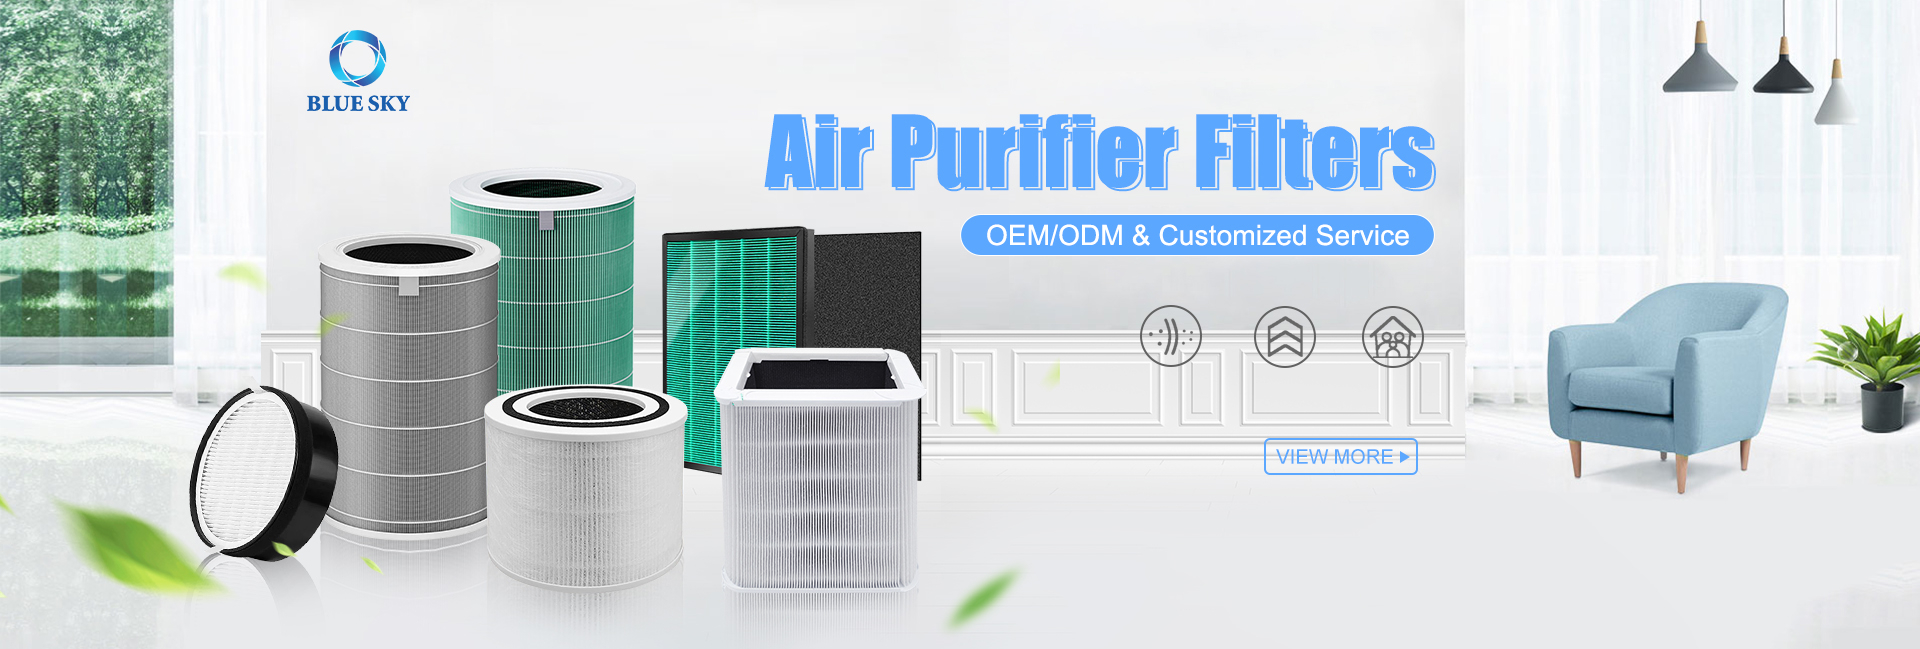 Filtros purificadores de aire